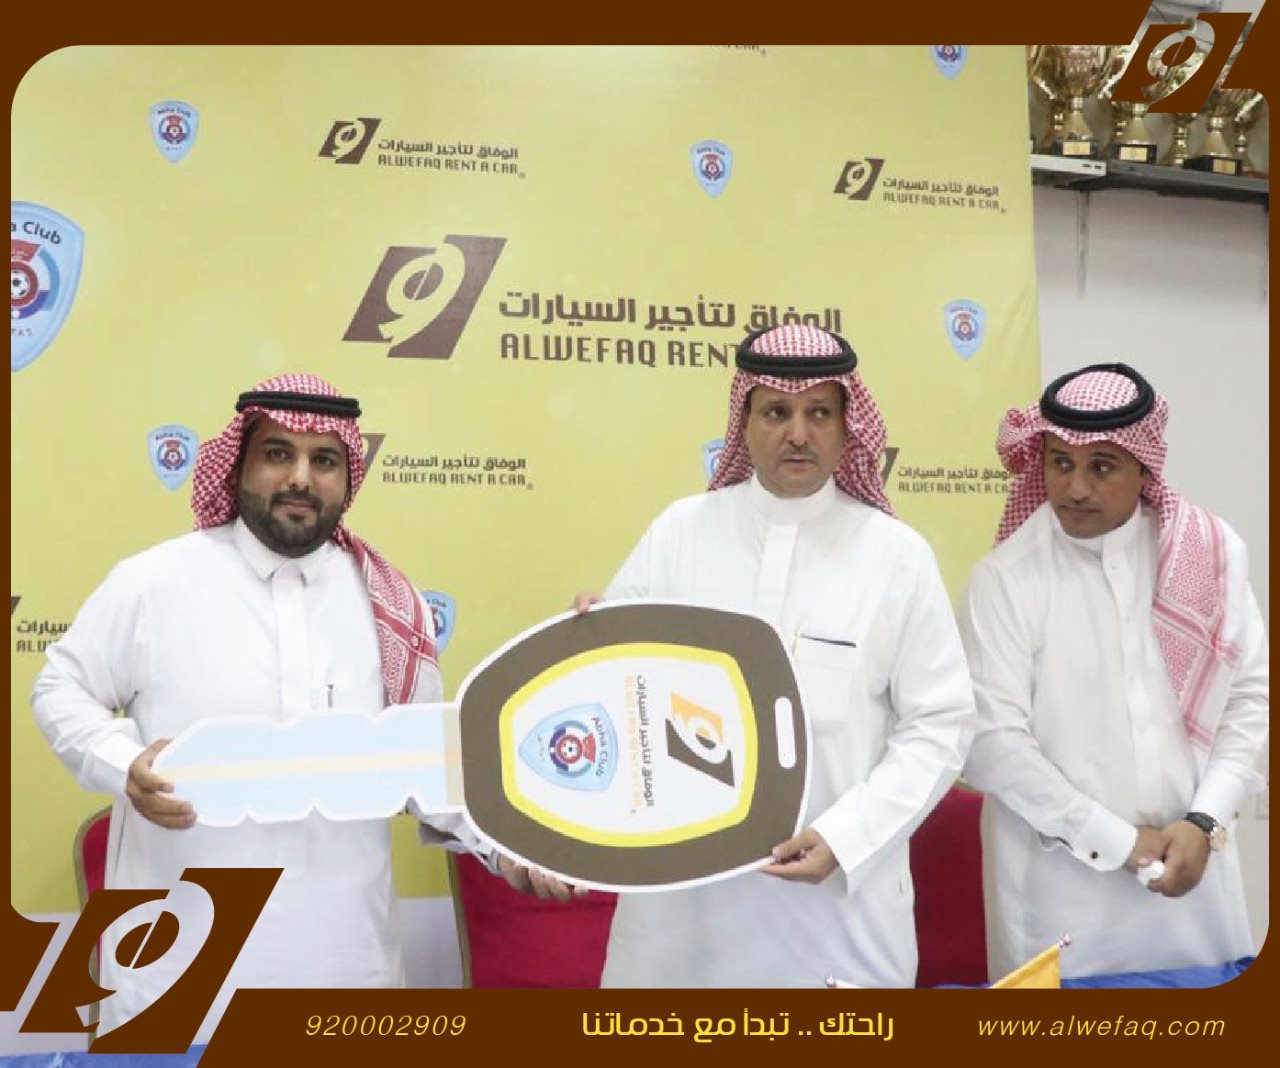 الوفاق لتأجير السيارات راعيًا رسمياً لنادي أبها 1